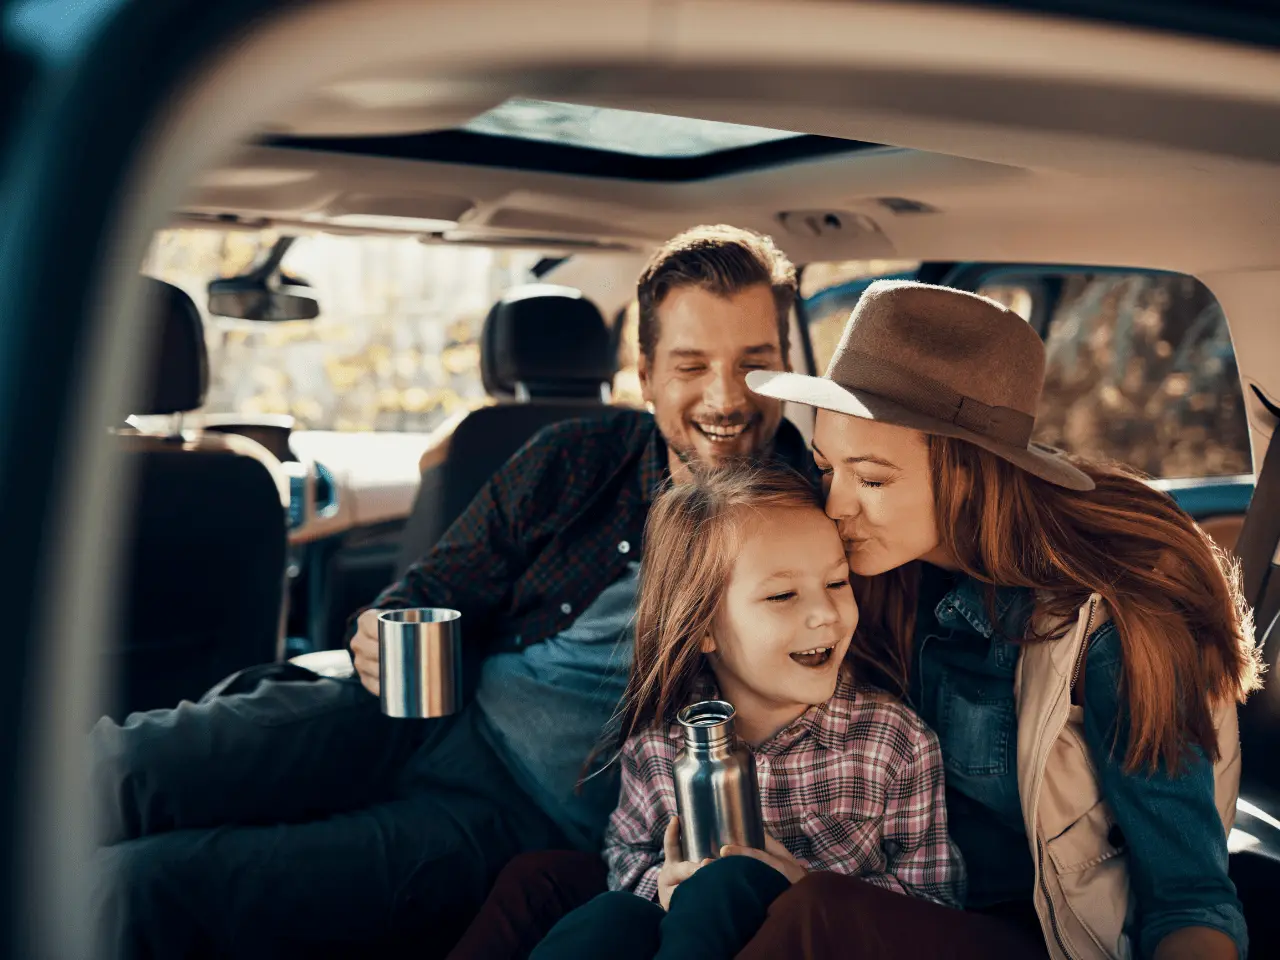 nnw kierowcy i pasażerów - szczęśliwa rodzina w samochodzie